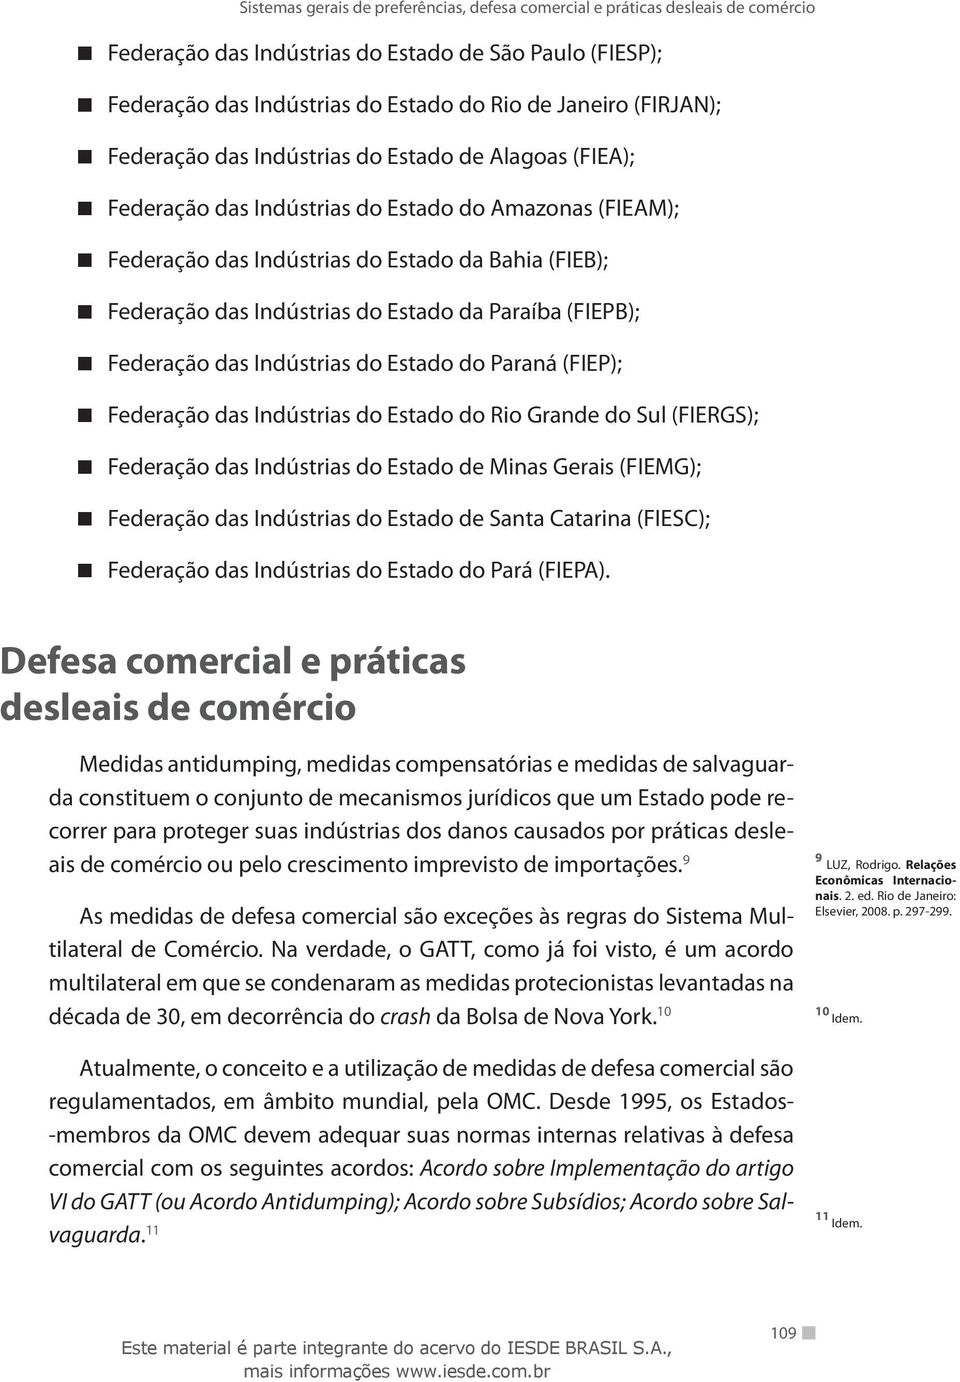 Federação das Indústrias do Estado do Rio Grande do Sul (FIERGS); Federação das Indústrias do Estado de Minas Gerais (FIEMG); Federação das Indústrias do Estado de Santa Catarina (FIESC); Federação